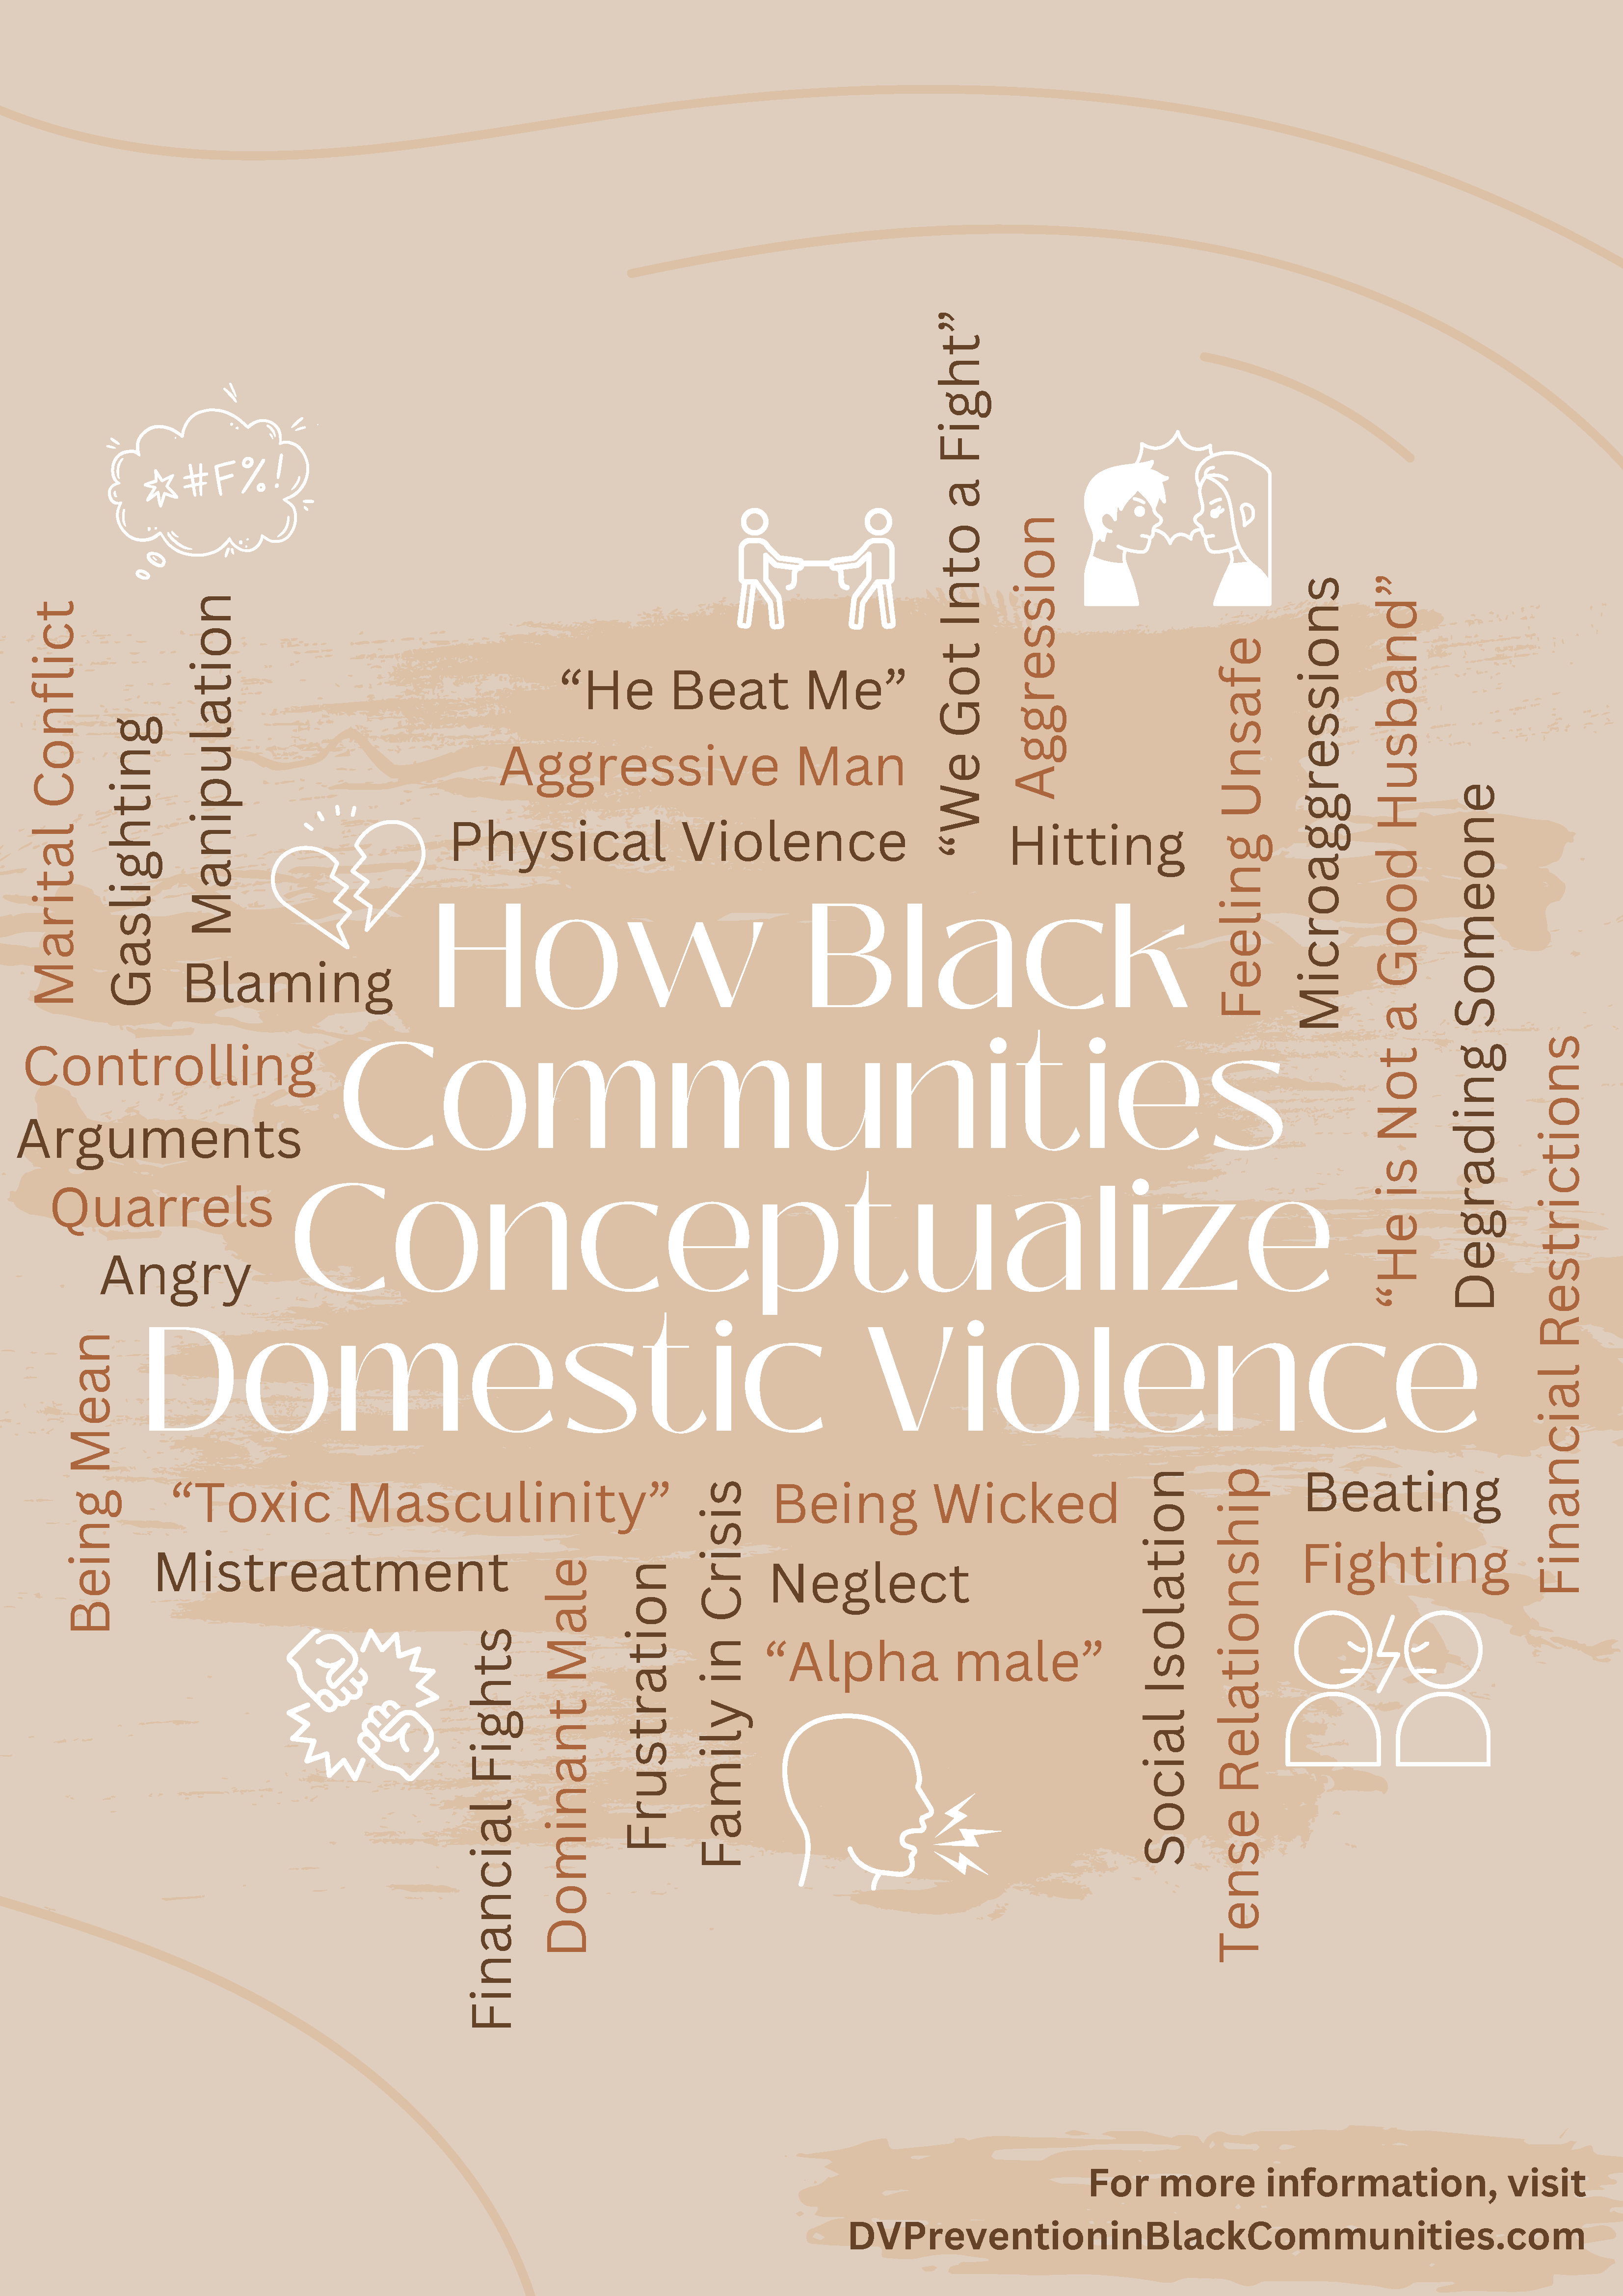 DV-Conceptualization-Black-Communities-Infographic.png